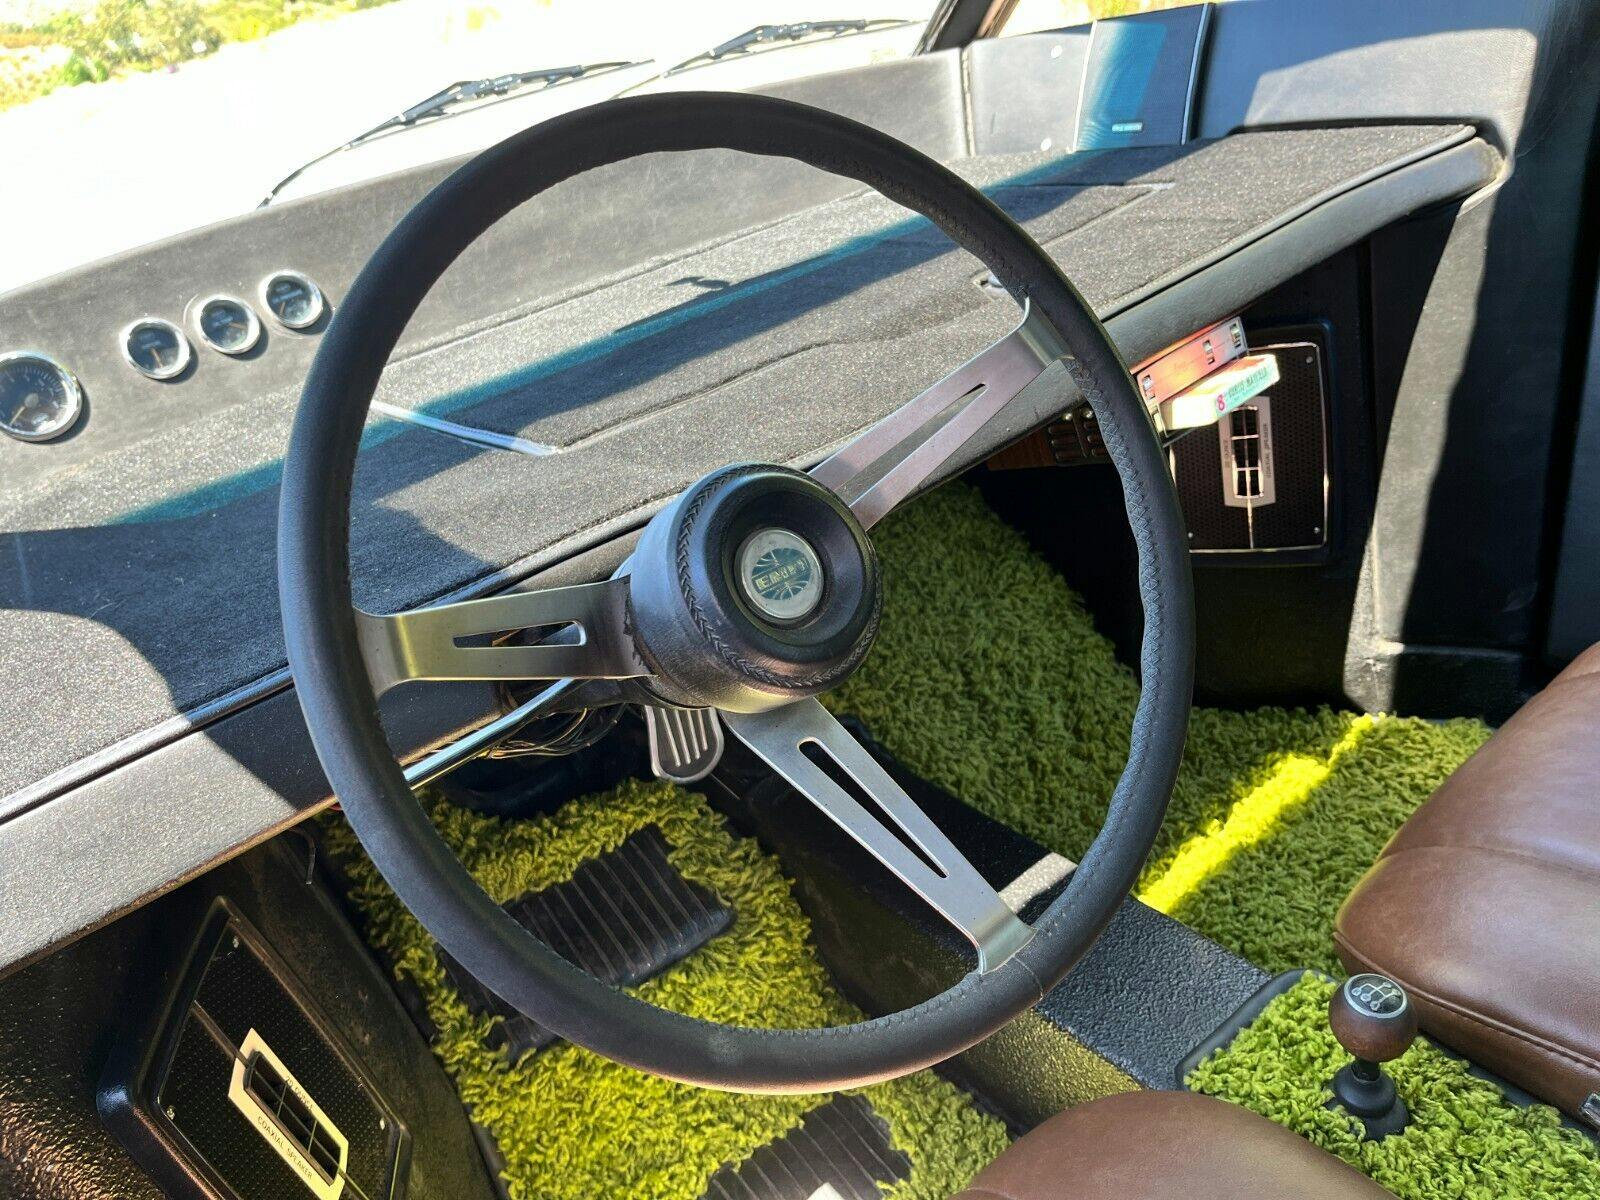 1971 Volkswagen Bus interior steering wheel